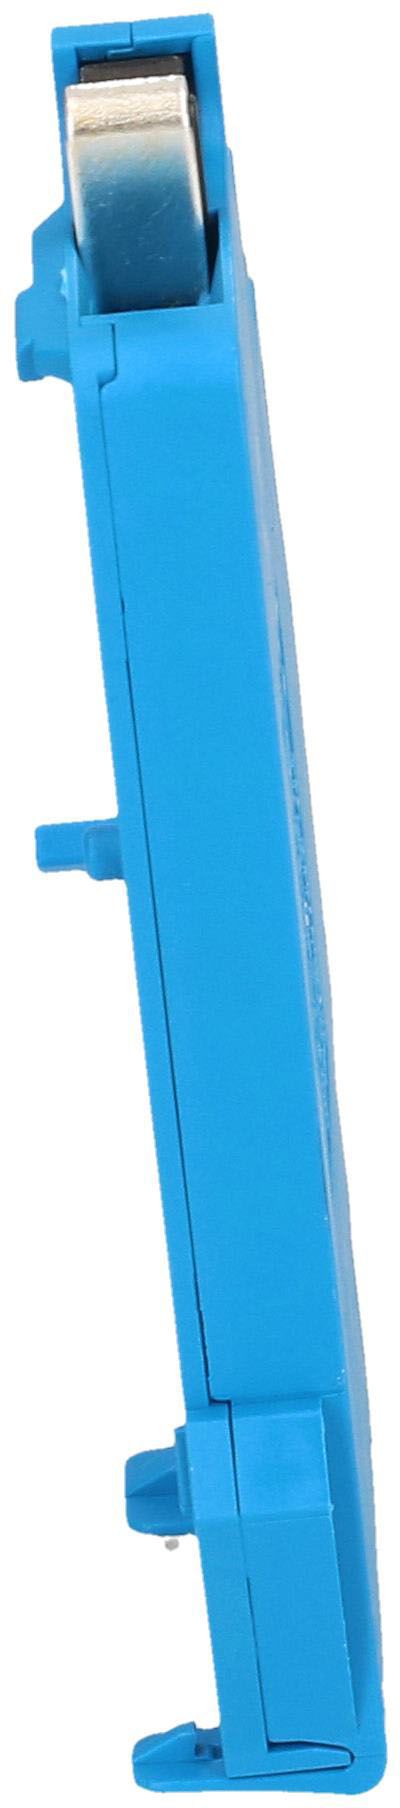 Neutralleitertrenner 63A blau